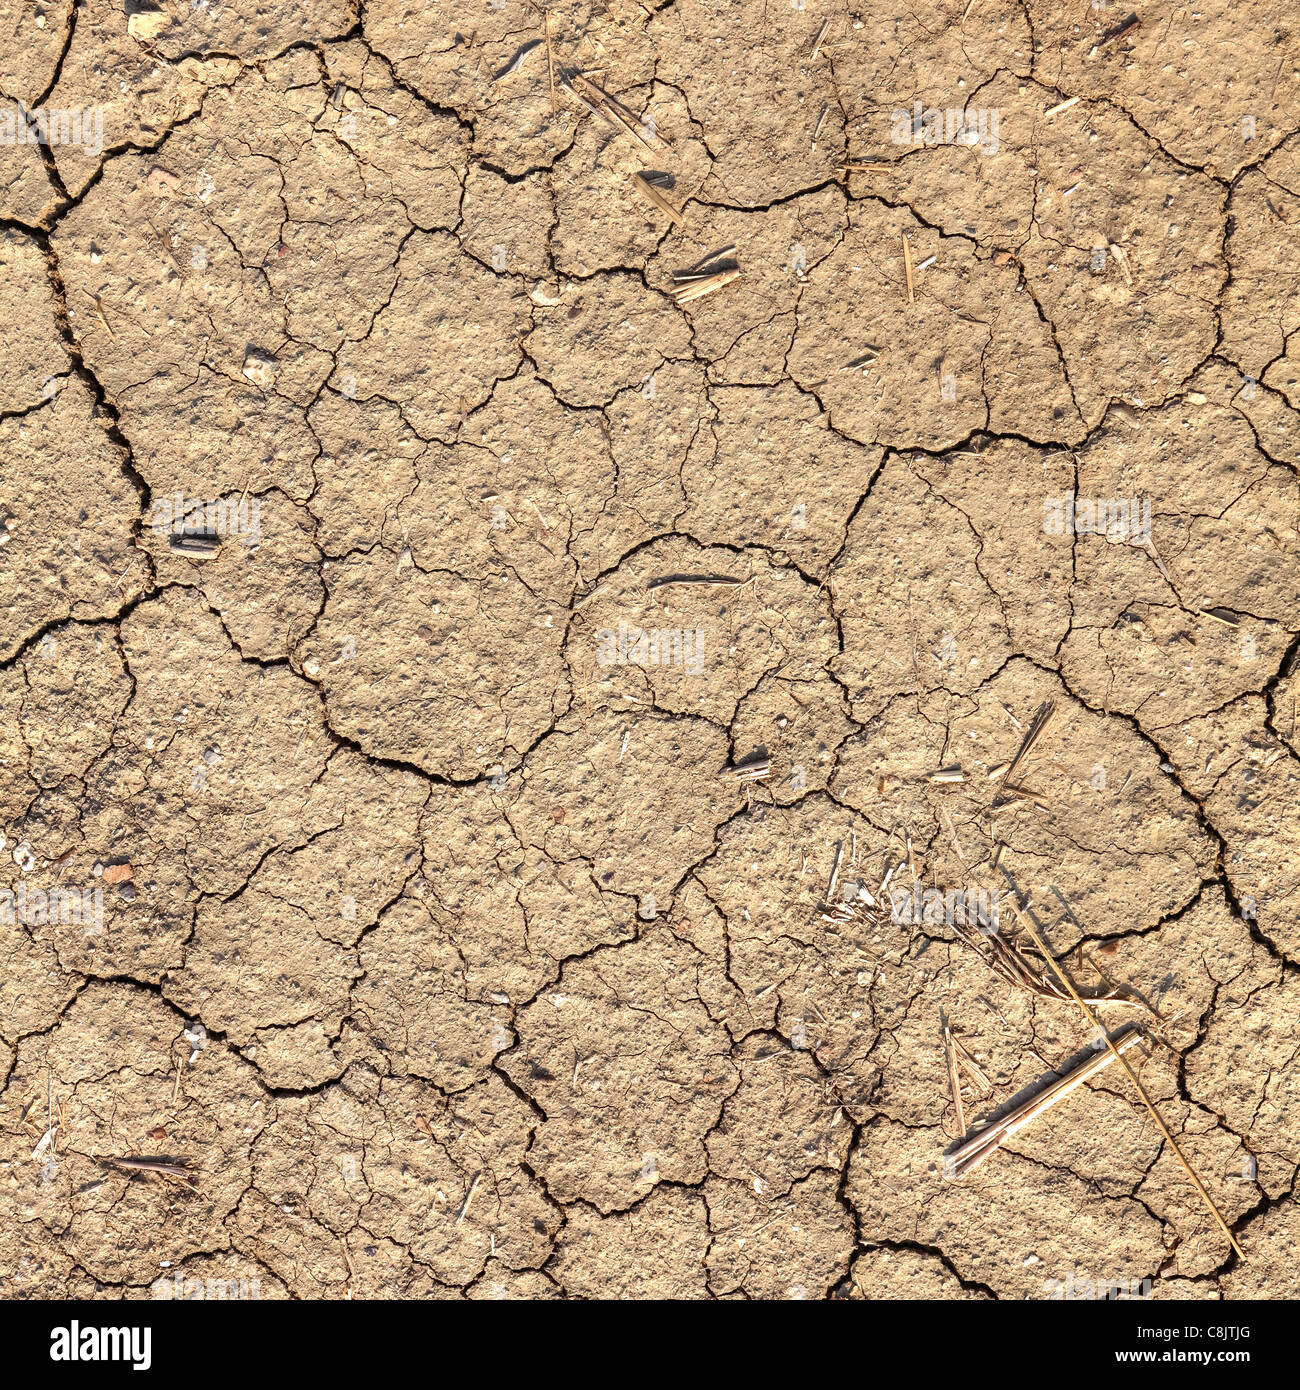 El suelo seco en la Toscana después de un largo verano sin lluvia Foto de stock